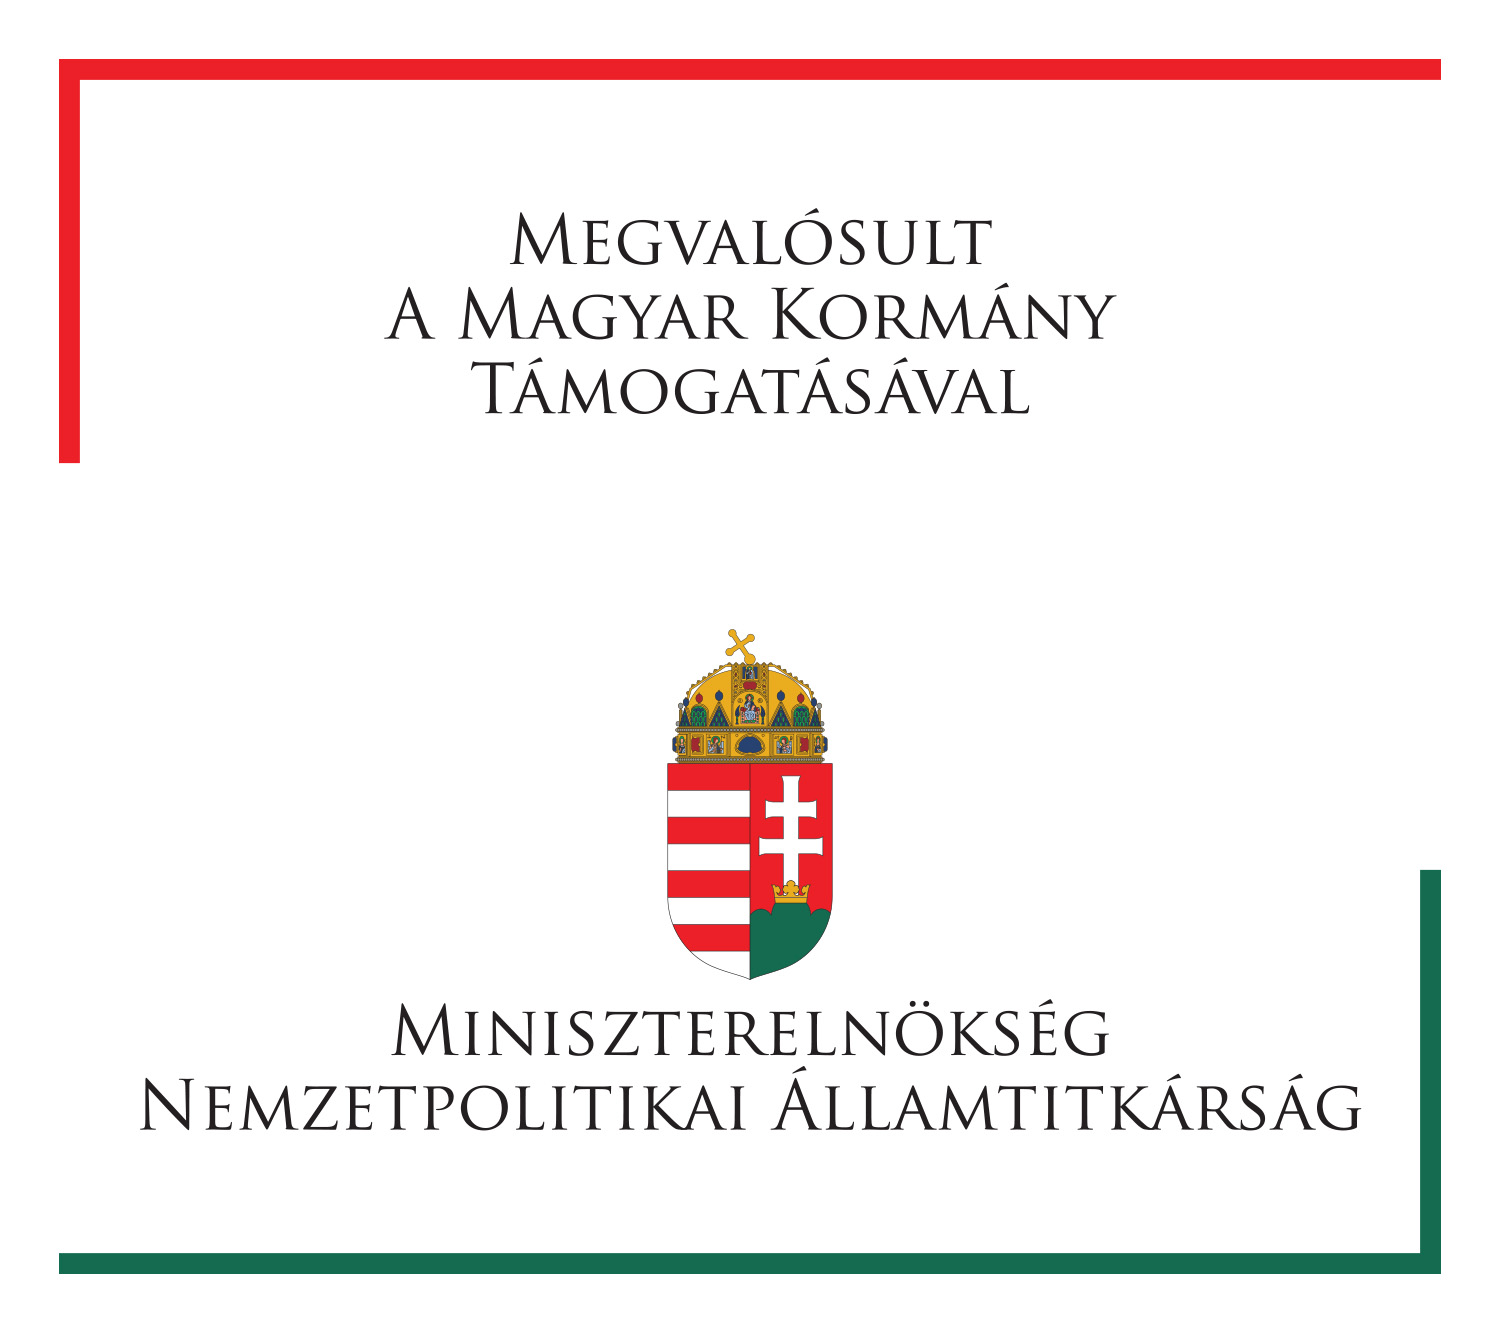 Megvalósult a Magyar Kormány Támogatásával, Miniszterelnökség Nemzetpolitikai Államtitkárság logó